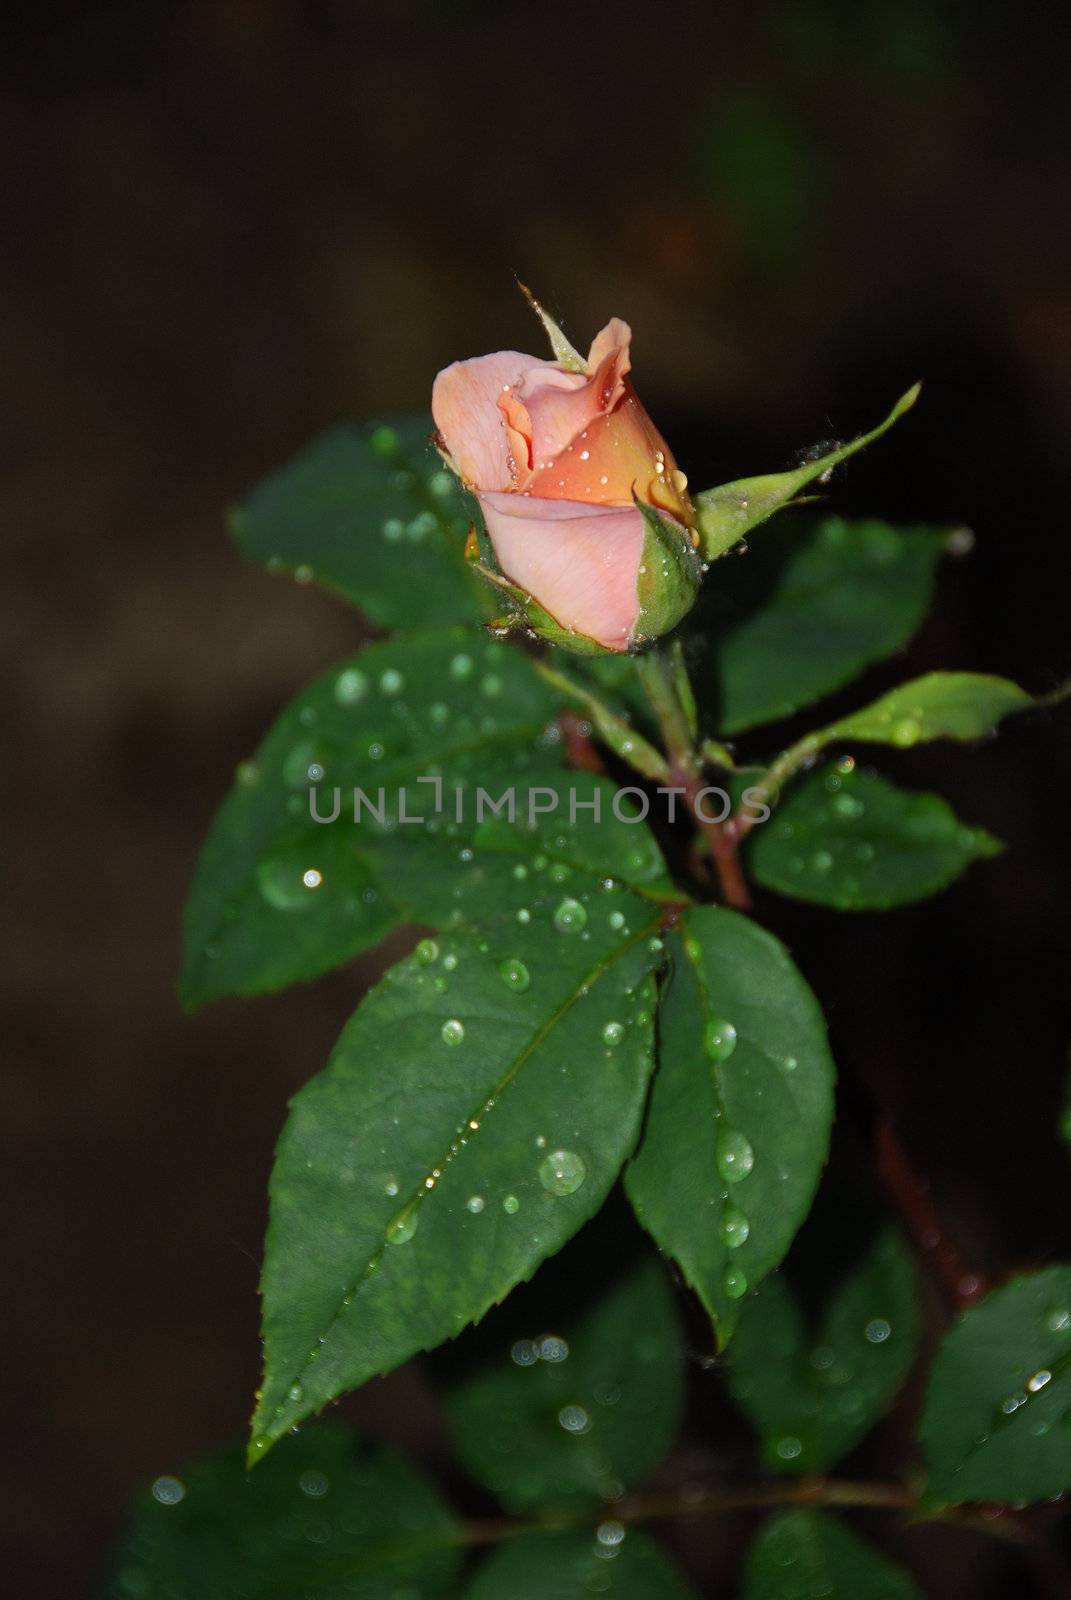 spring roses with rain drpos